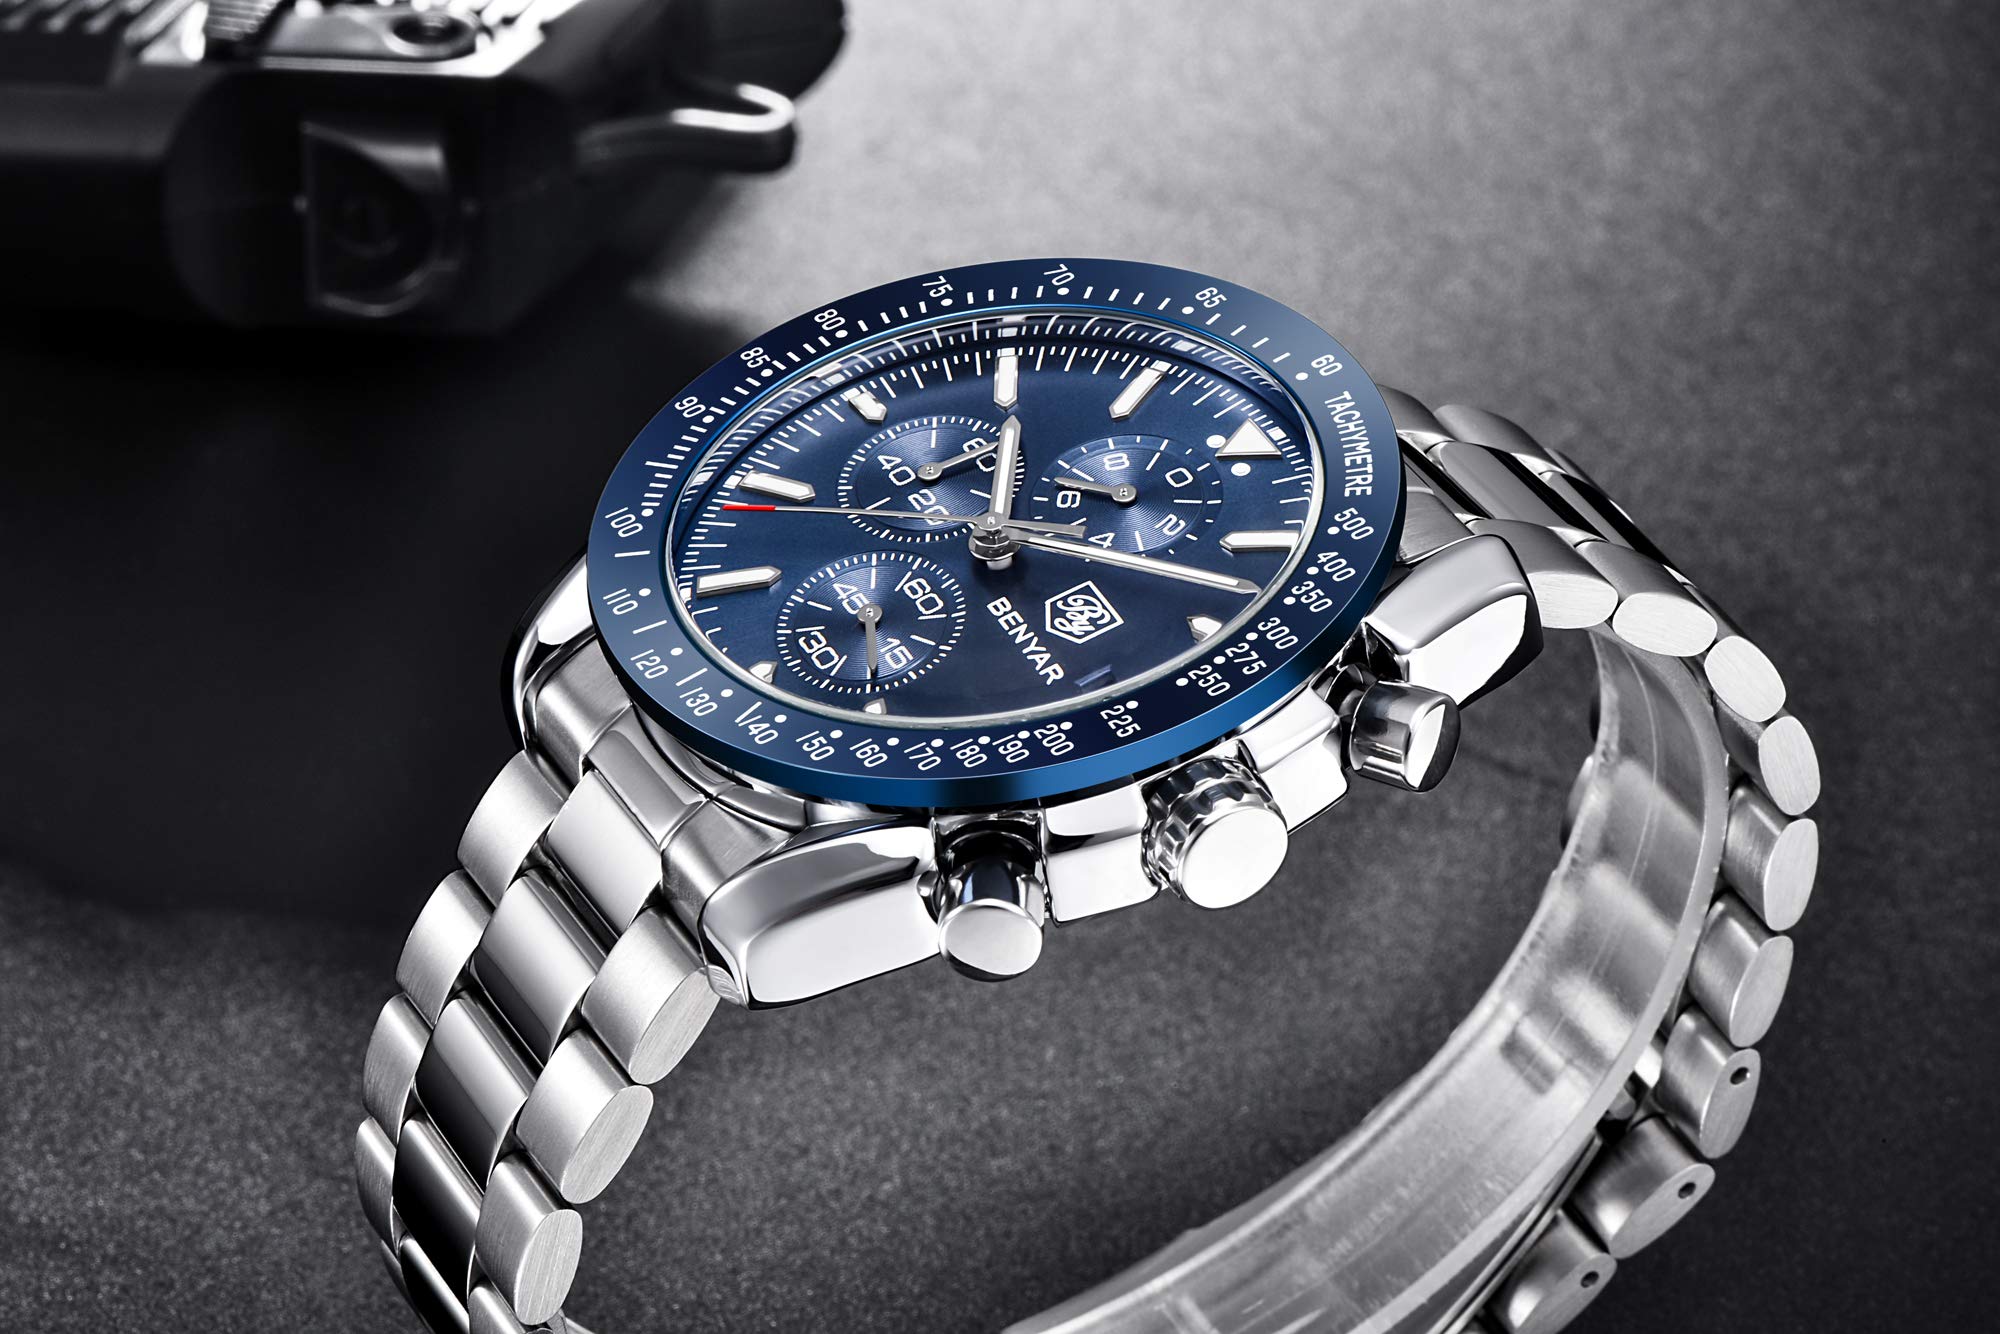 BENYAR Herren Uhr Chronograph Analogue Quartz Wasserdicht Business Schwarz/Blau Zifferblatt Armbanduhr mit Braunes Leder Armband